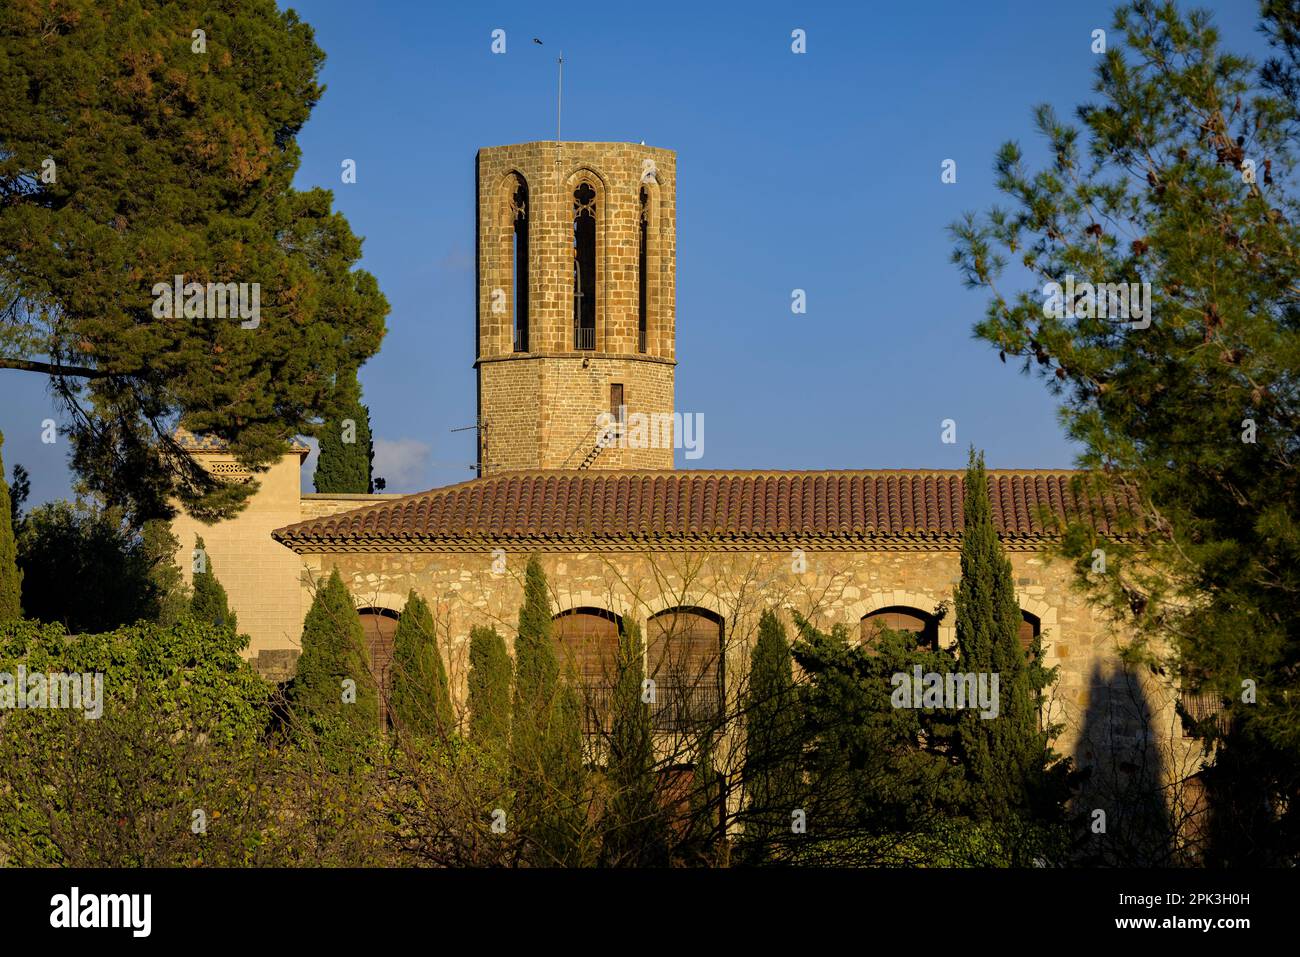 Campanile del Monastero reale di Pedralbes al tramonto (Barcellona, Catalogna, Spagna) ESP: Campanario del Real Monasterio de Pedralbes al atardecer Foto Stock